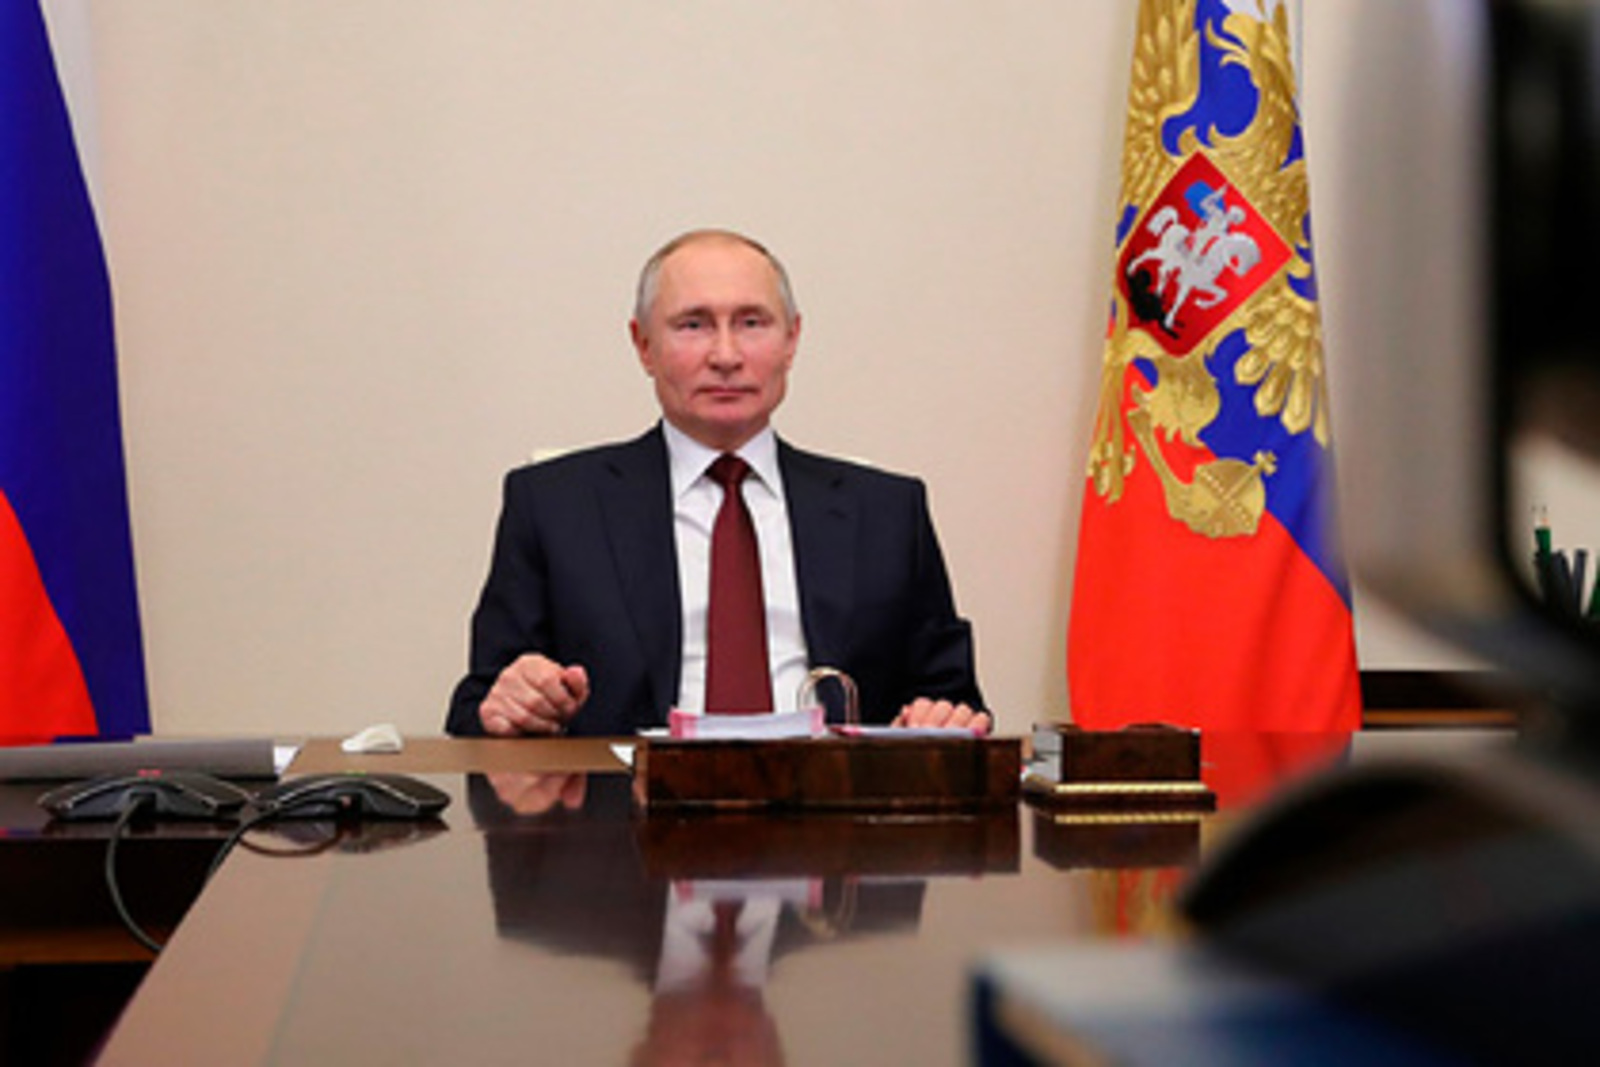 Путин оценил решение о лишении России флага и гимна на Олимпиаде